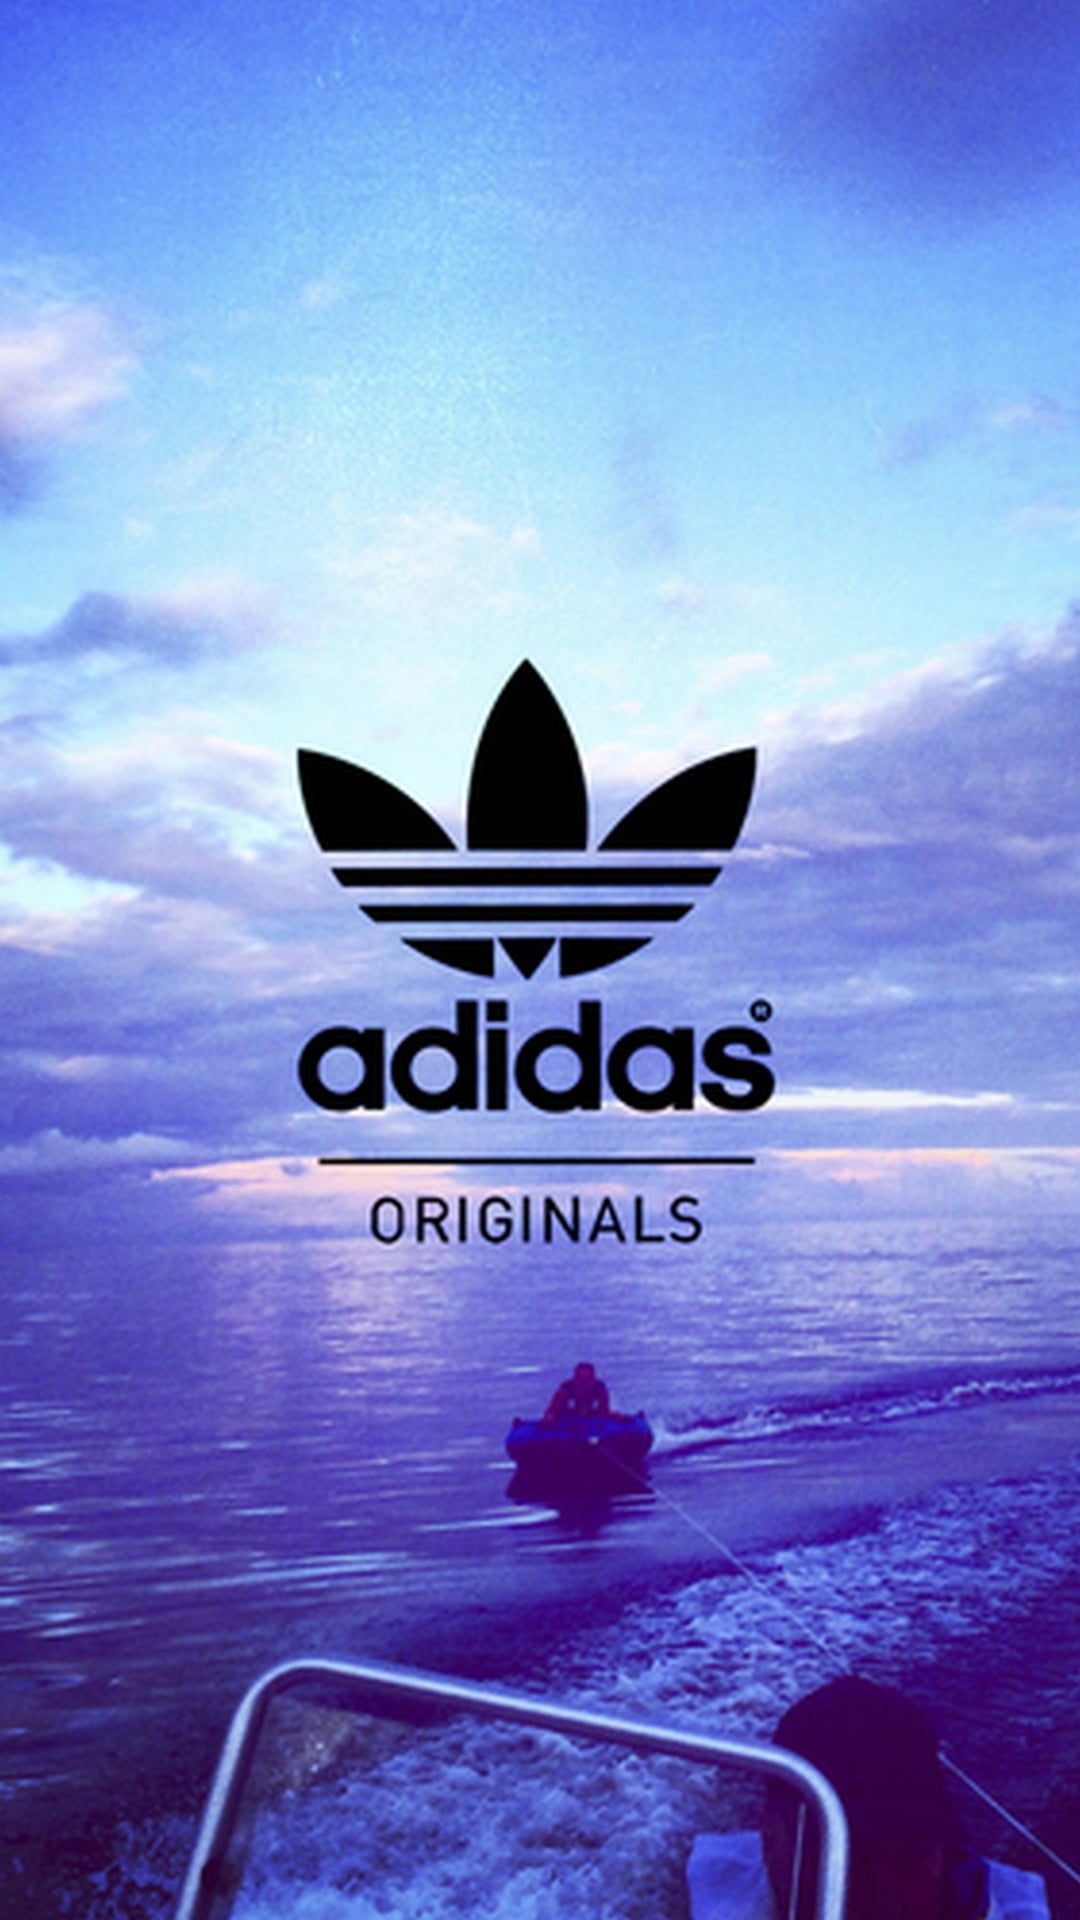 画像をダウンロード Adidas Originals 壁紙 無料ダウンロードhd壁紙画像